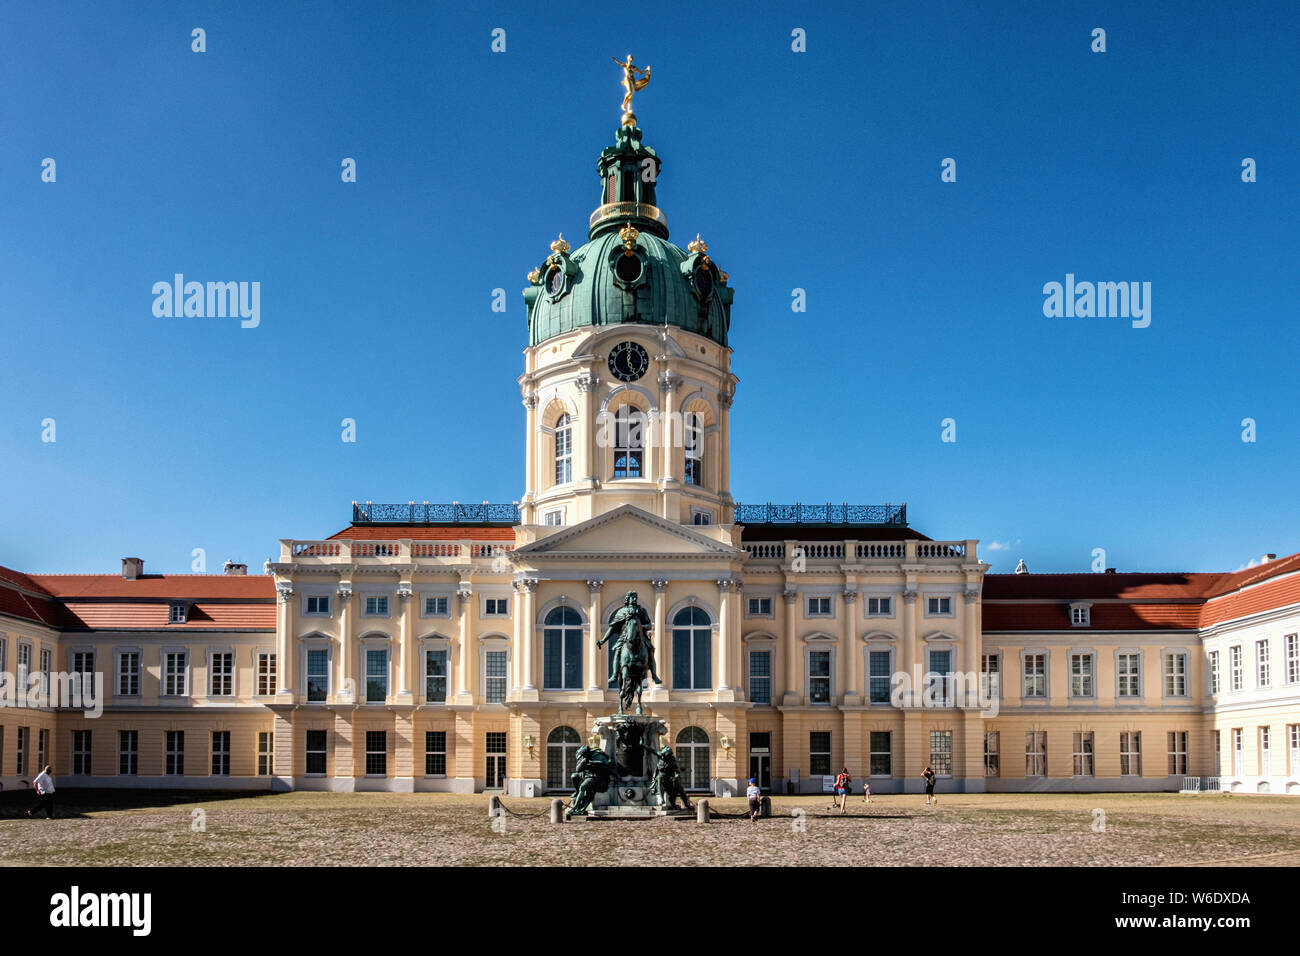 Berlino, Schloss Charlottenburg,Palazzo di Charlottenburg. Storico edificio a cupola, il cortile e la statua equestre di Friedrich Wilhelm 1 Foto Stock